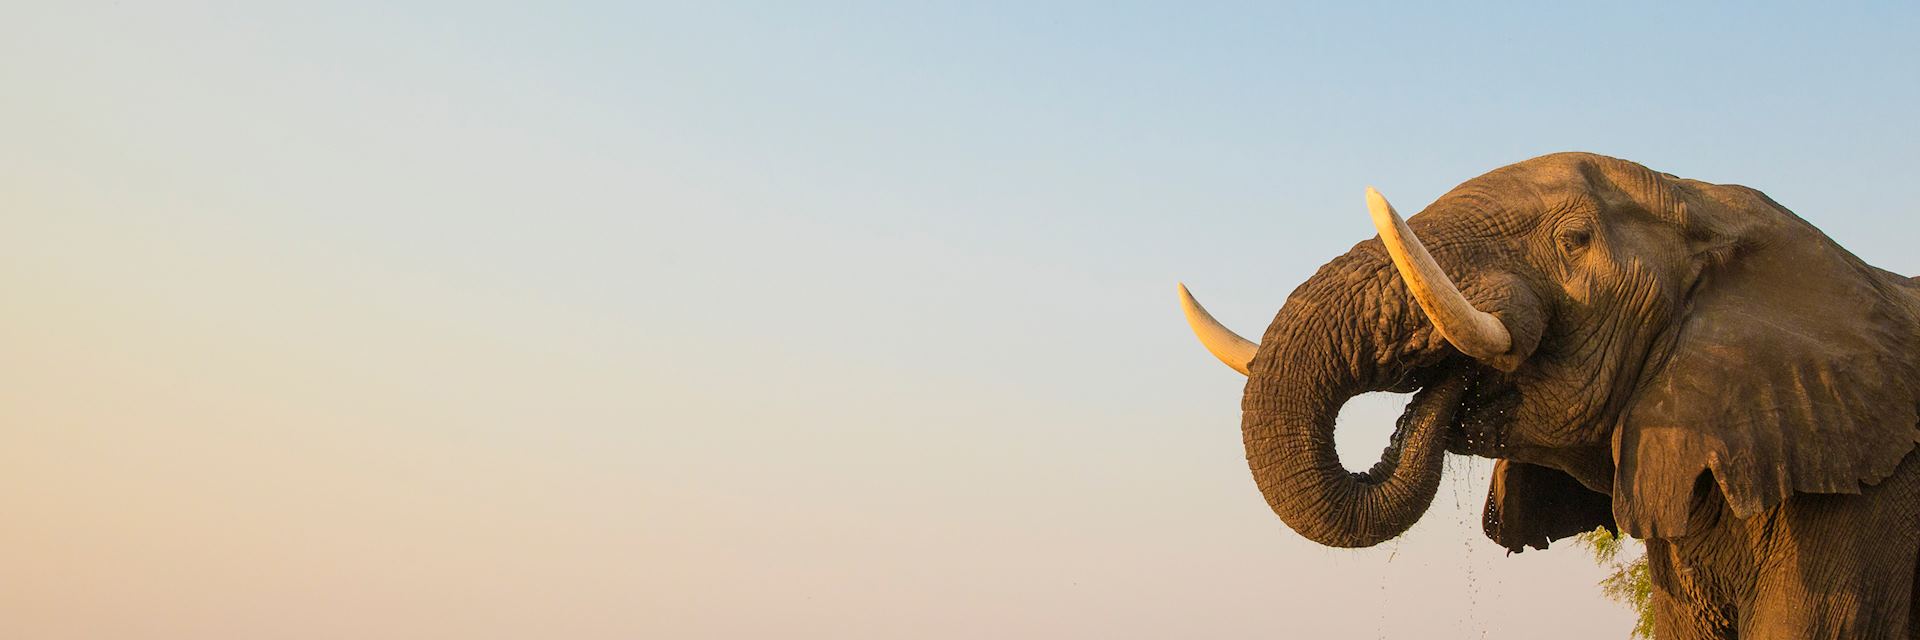 Bull elephant drinking at the Zambezi river